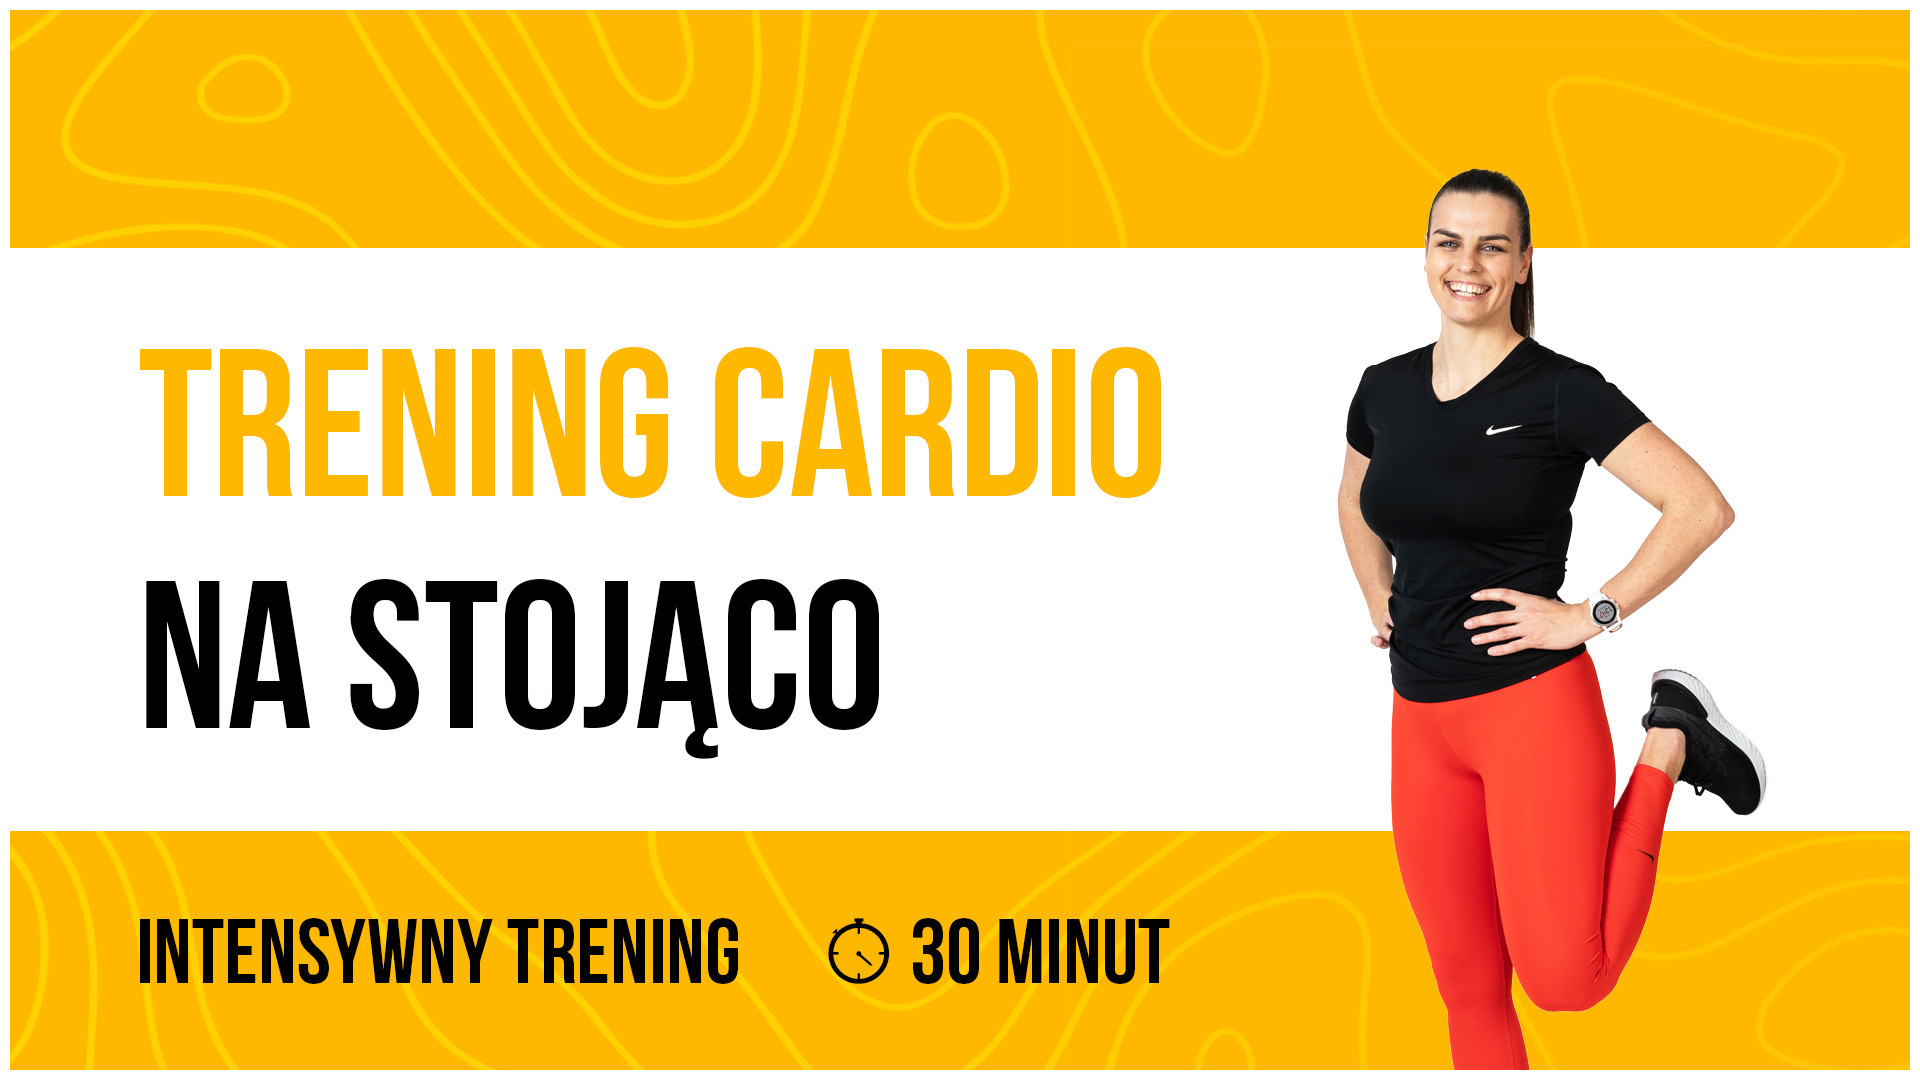 trening cardio na stojąco 30 minut